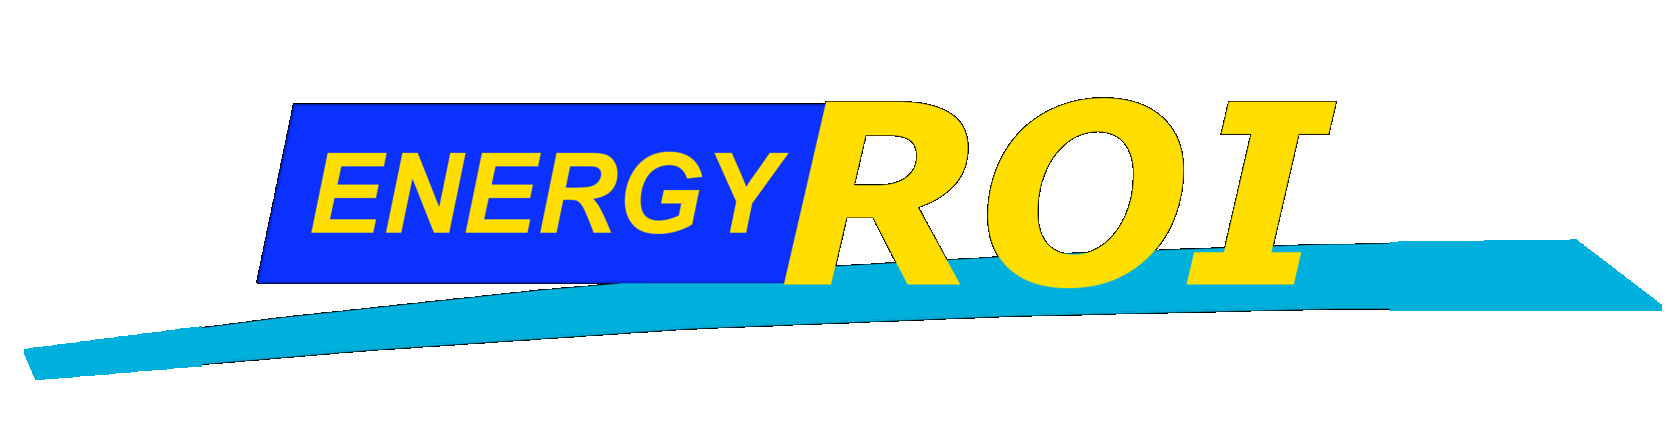 Energy ROI